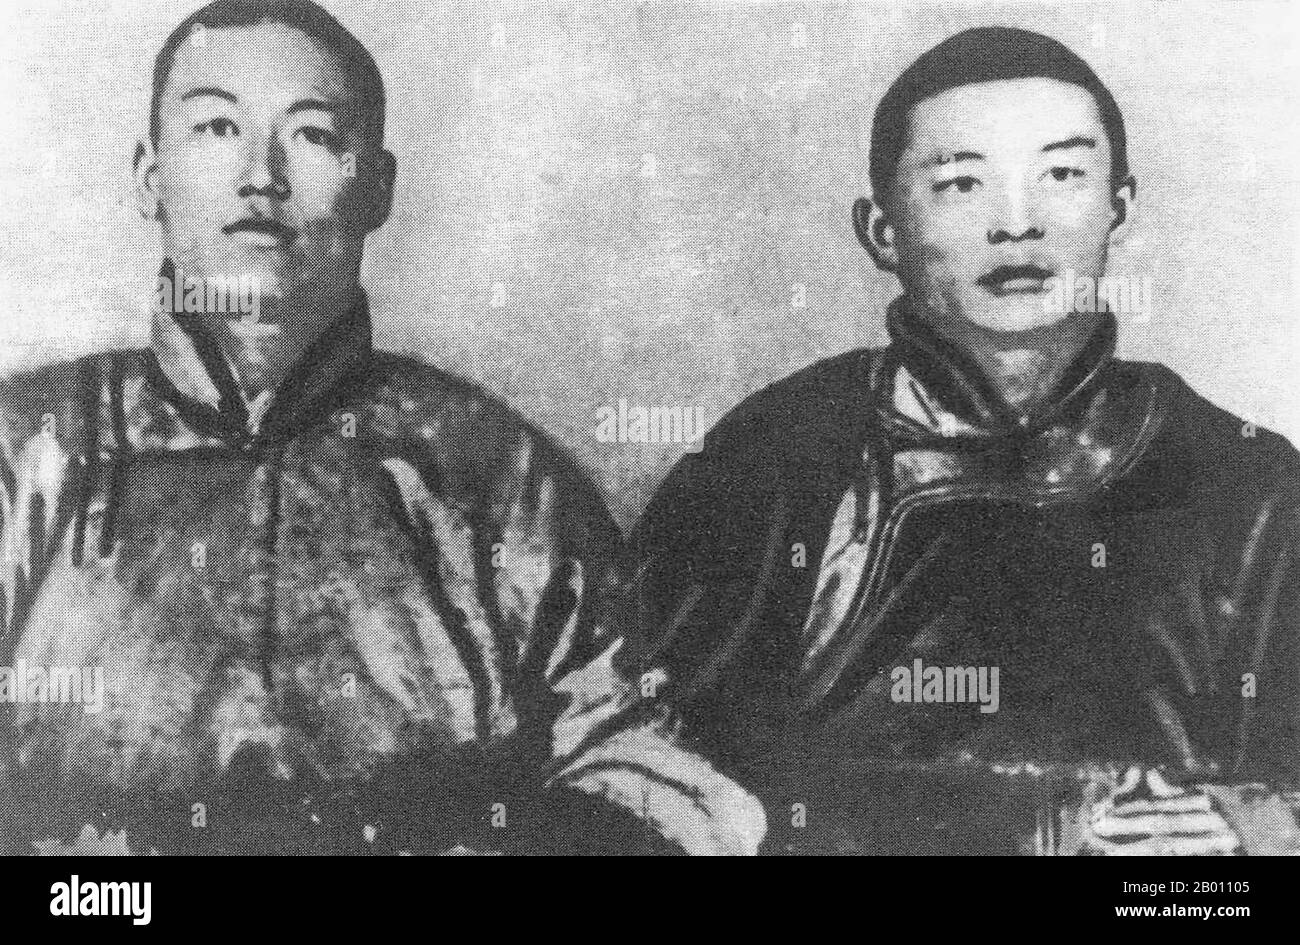 Mongolei: Damdin Sukhbaatar (1893-1923, links) und Khorloogiin Choibalsan (1895-1952, rechts), mongolische revolutionäre Führer, Anfang 1920s. Damdin Sukhbaatar (2. Februar 1893 - 20. Februar 1923) war ein mongolischer Militärführer in der Revolution von 1921. Er gilt als einer der wichtigsten Persönlichkeiten im Unabhängigkeitskampf der Mongolei. Khorloogiin Choibalsan schloss sich Sukhbaatar an, um die revolutionäre Partei des mongolischen Volkes zu gründen. Nachdem die mongolischen und sowjetischen Streitkräfte der Roten Armee 1921 in Urga eindrangen und eine prosowjetische Regierung gründeten, wurde Choibalsan stellvertretender Kriegsminister. Stockfoto